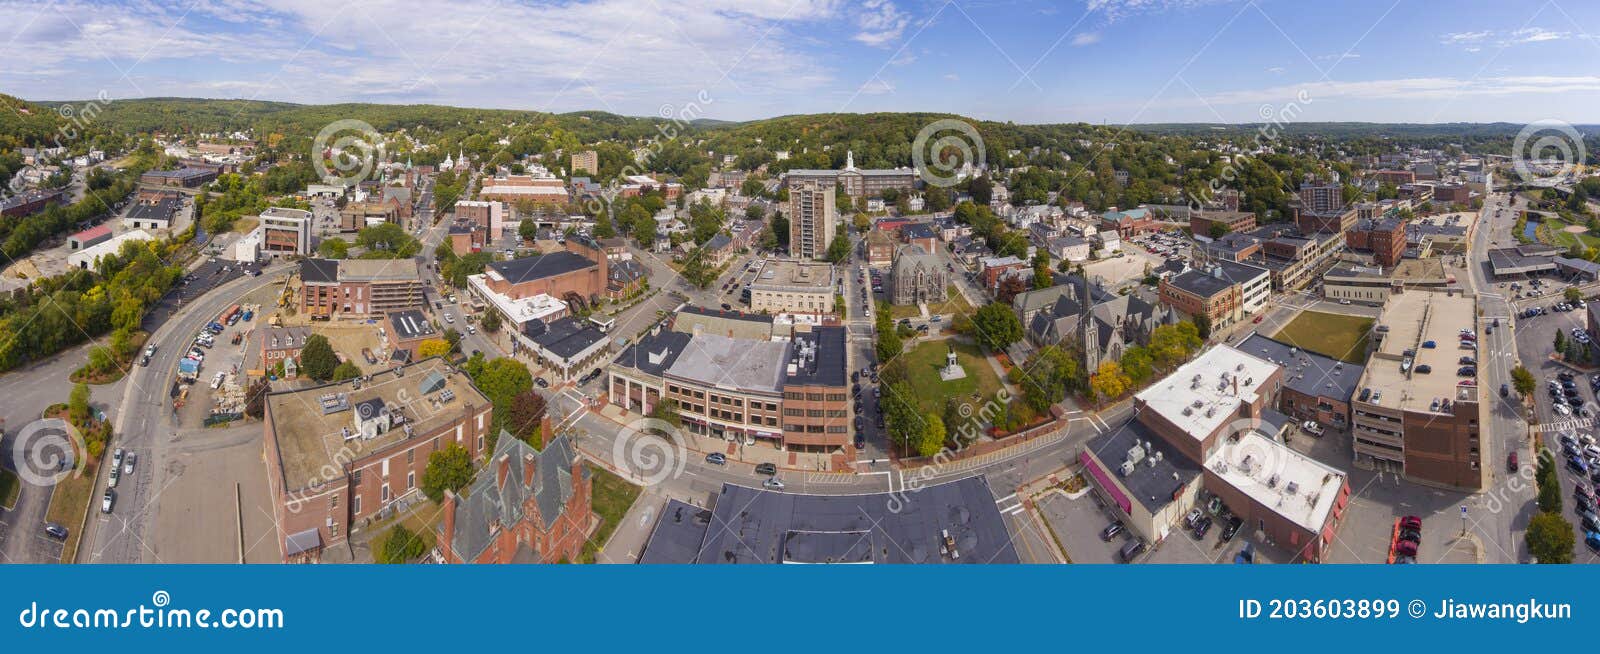 fitchburg city aerial view, fitchburg, massachusetts, usa